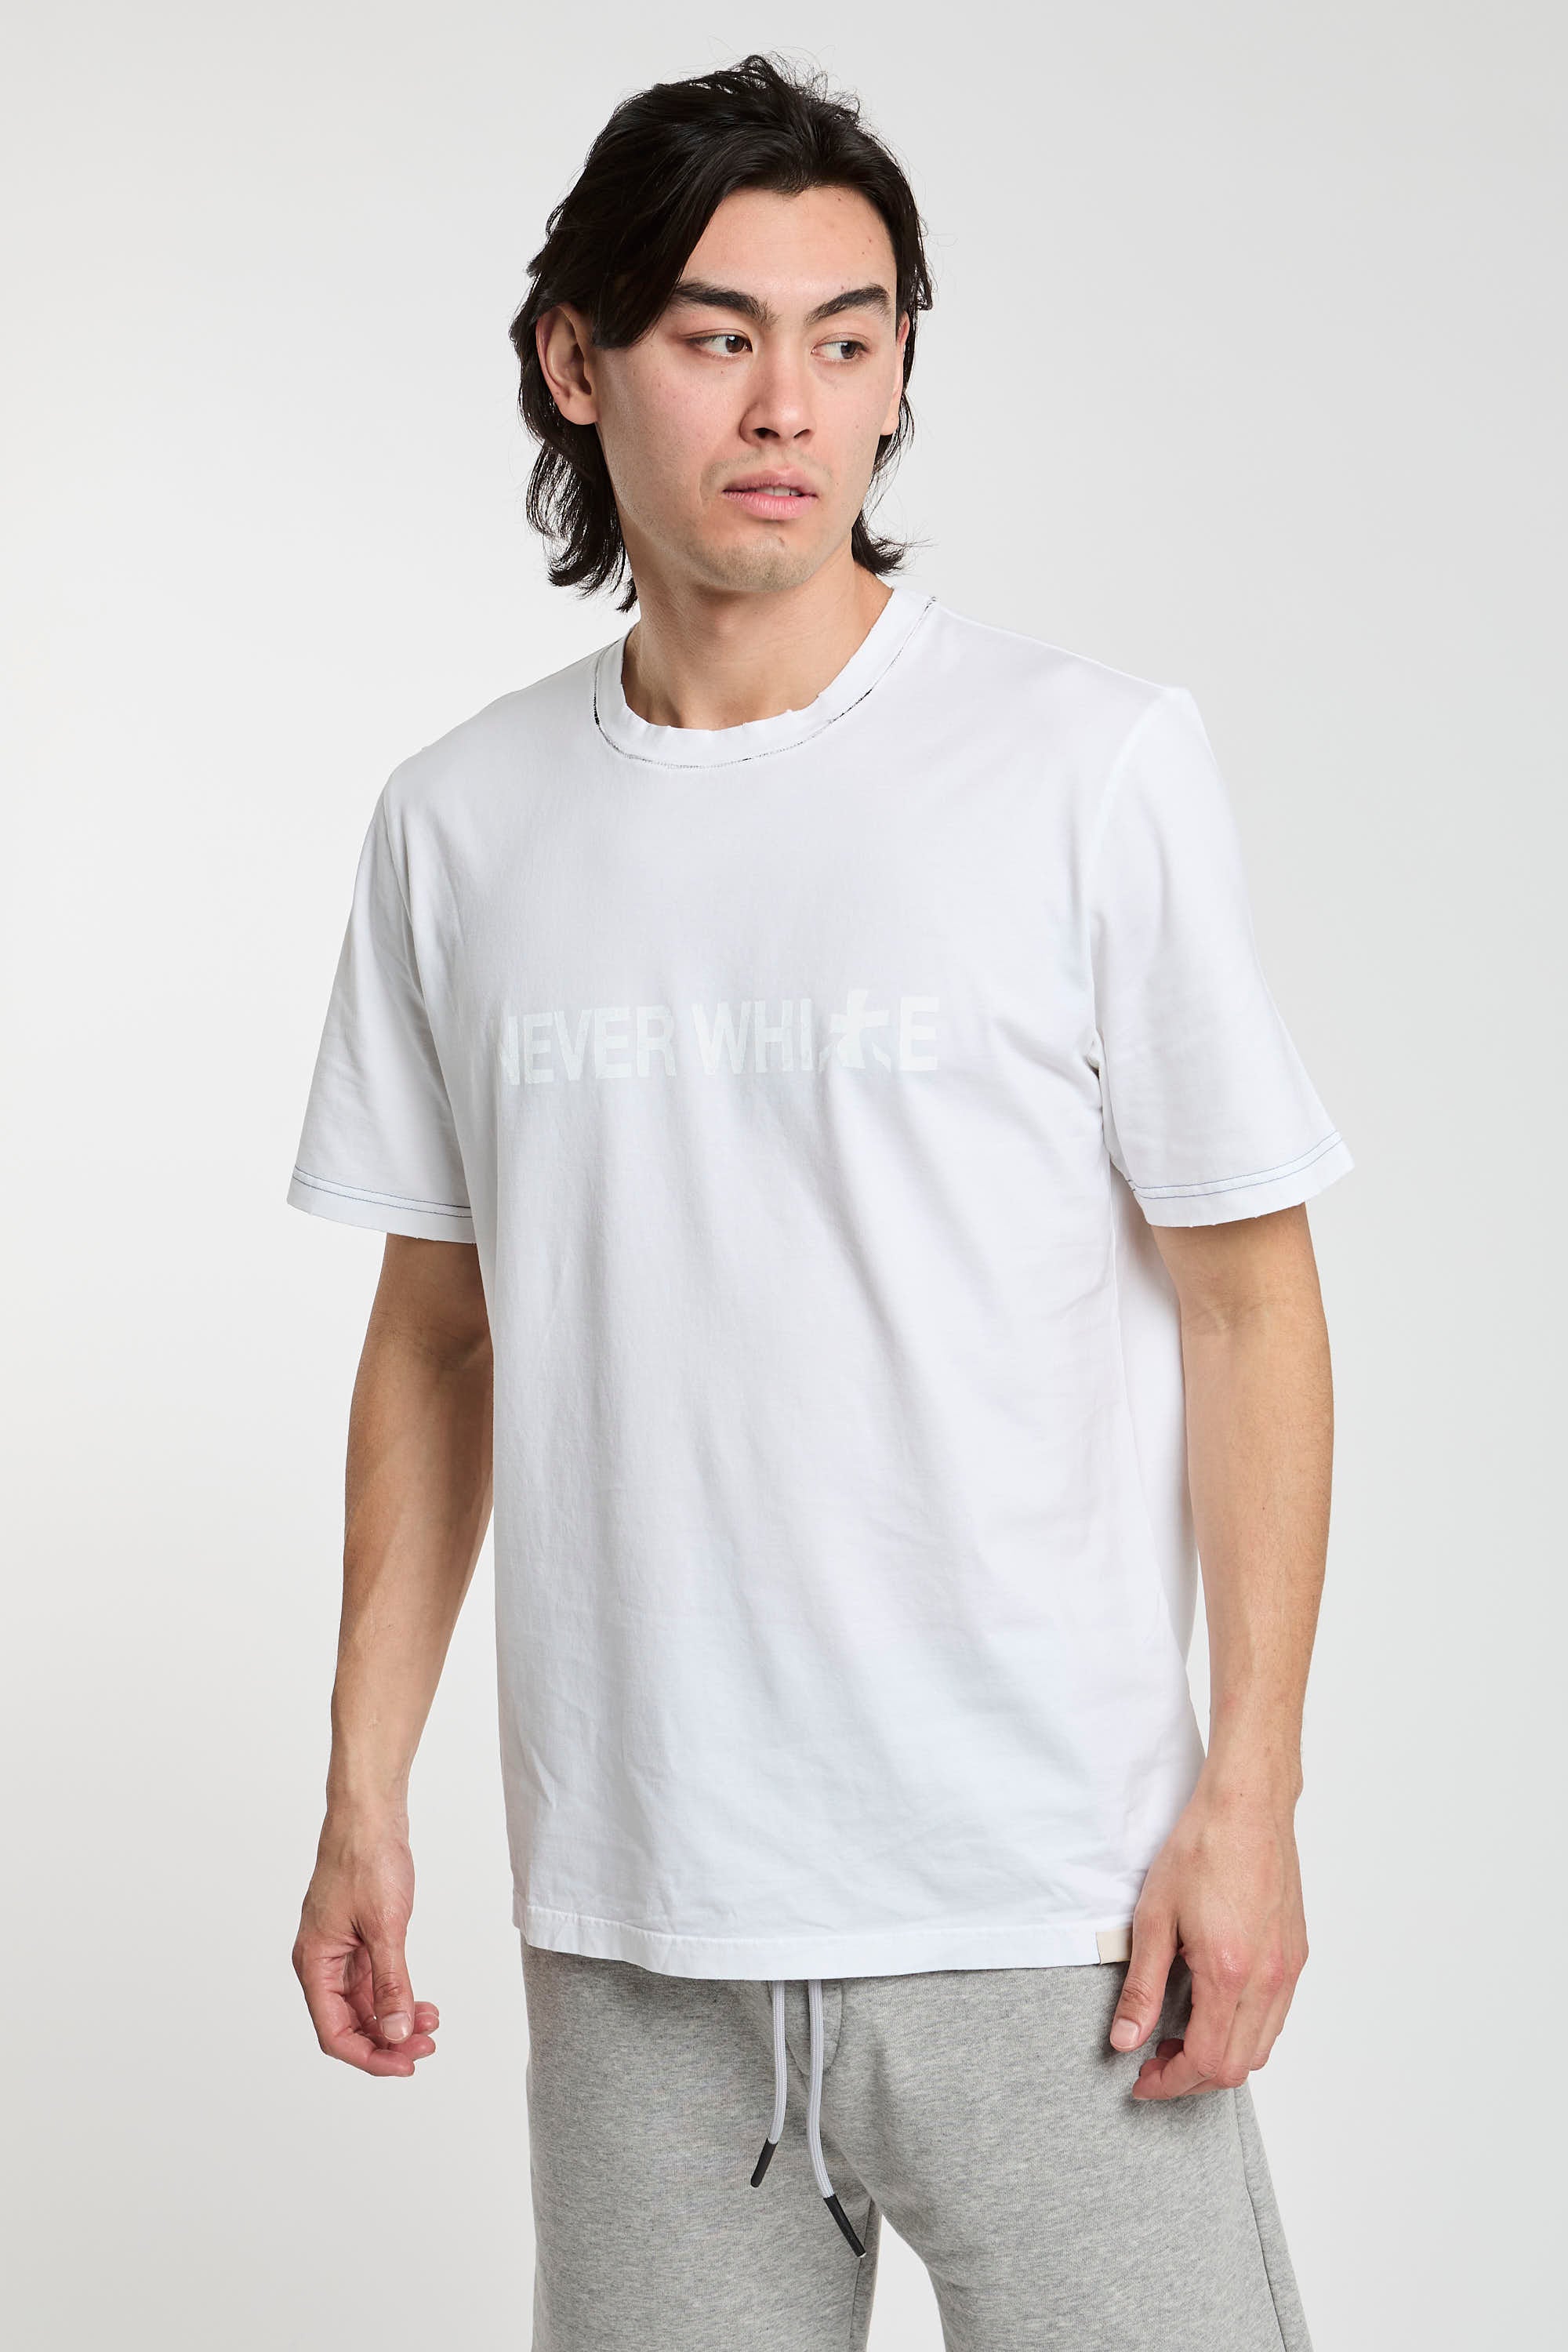 Premiata T-Shirt 'Never White' aus weißer Baumwolle-3